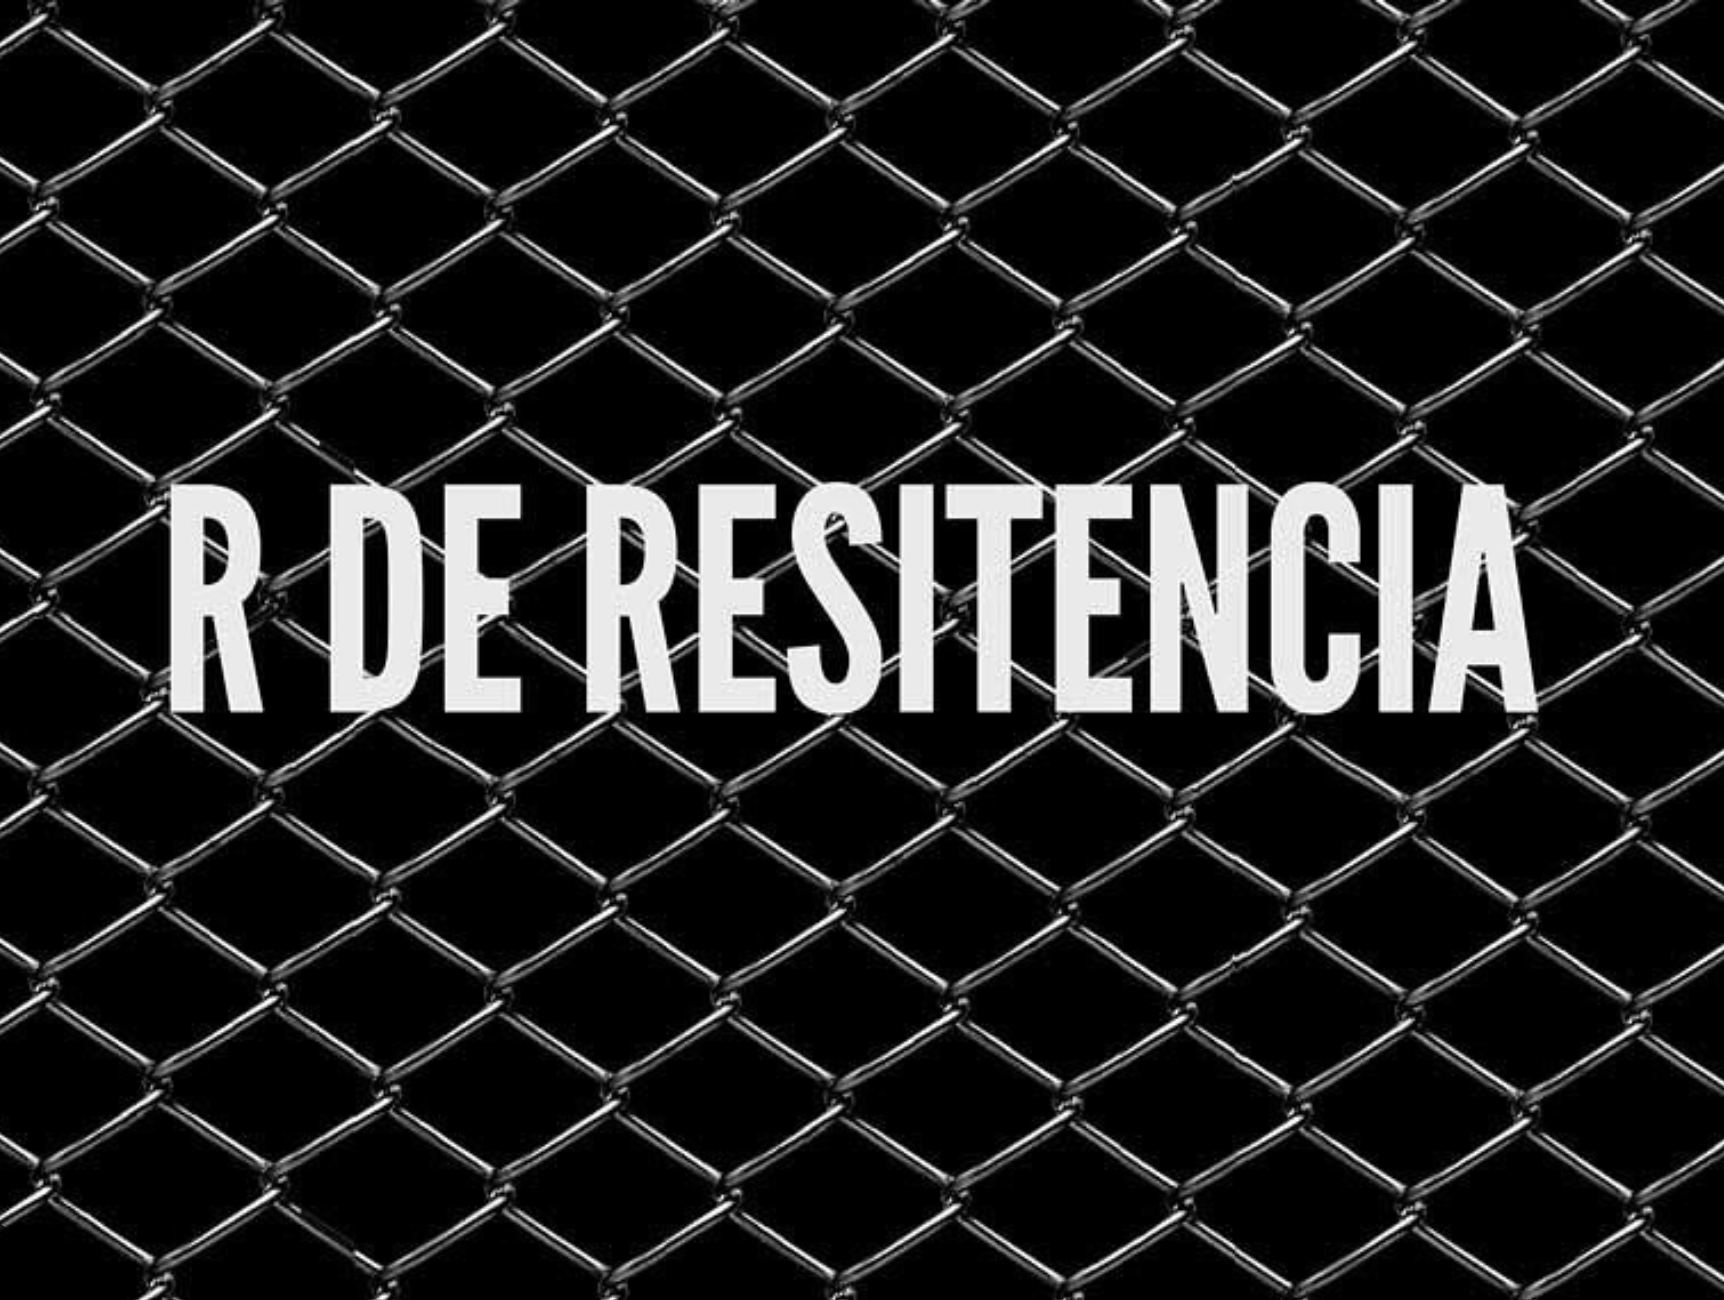 Opening of the exhibition "R de Resistencia" by Ramón Mateos | Sala el Brocense, Cáceres